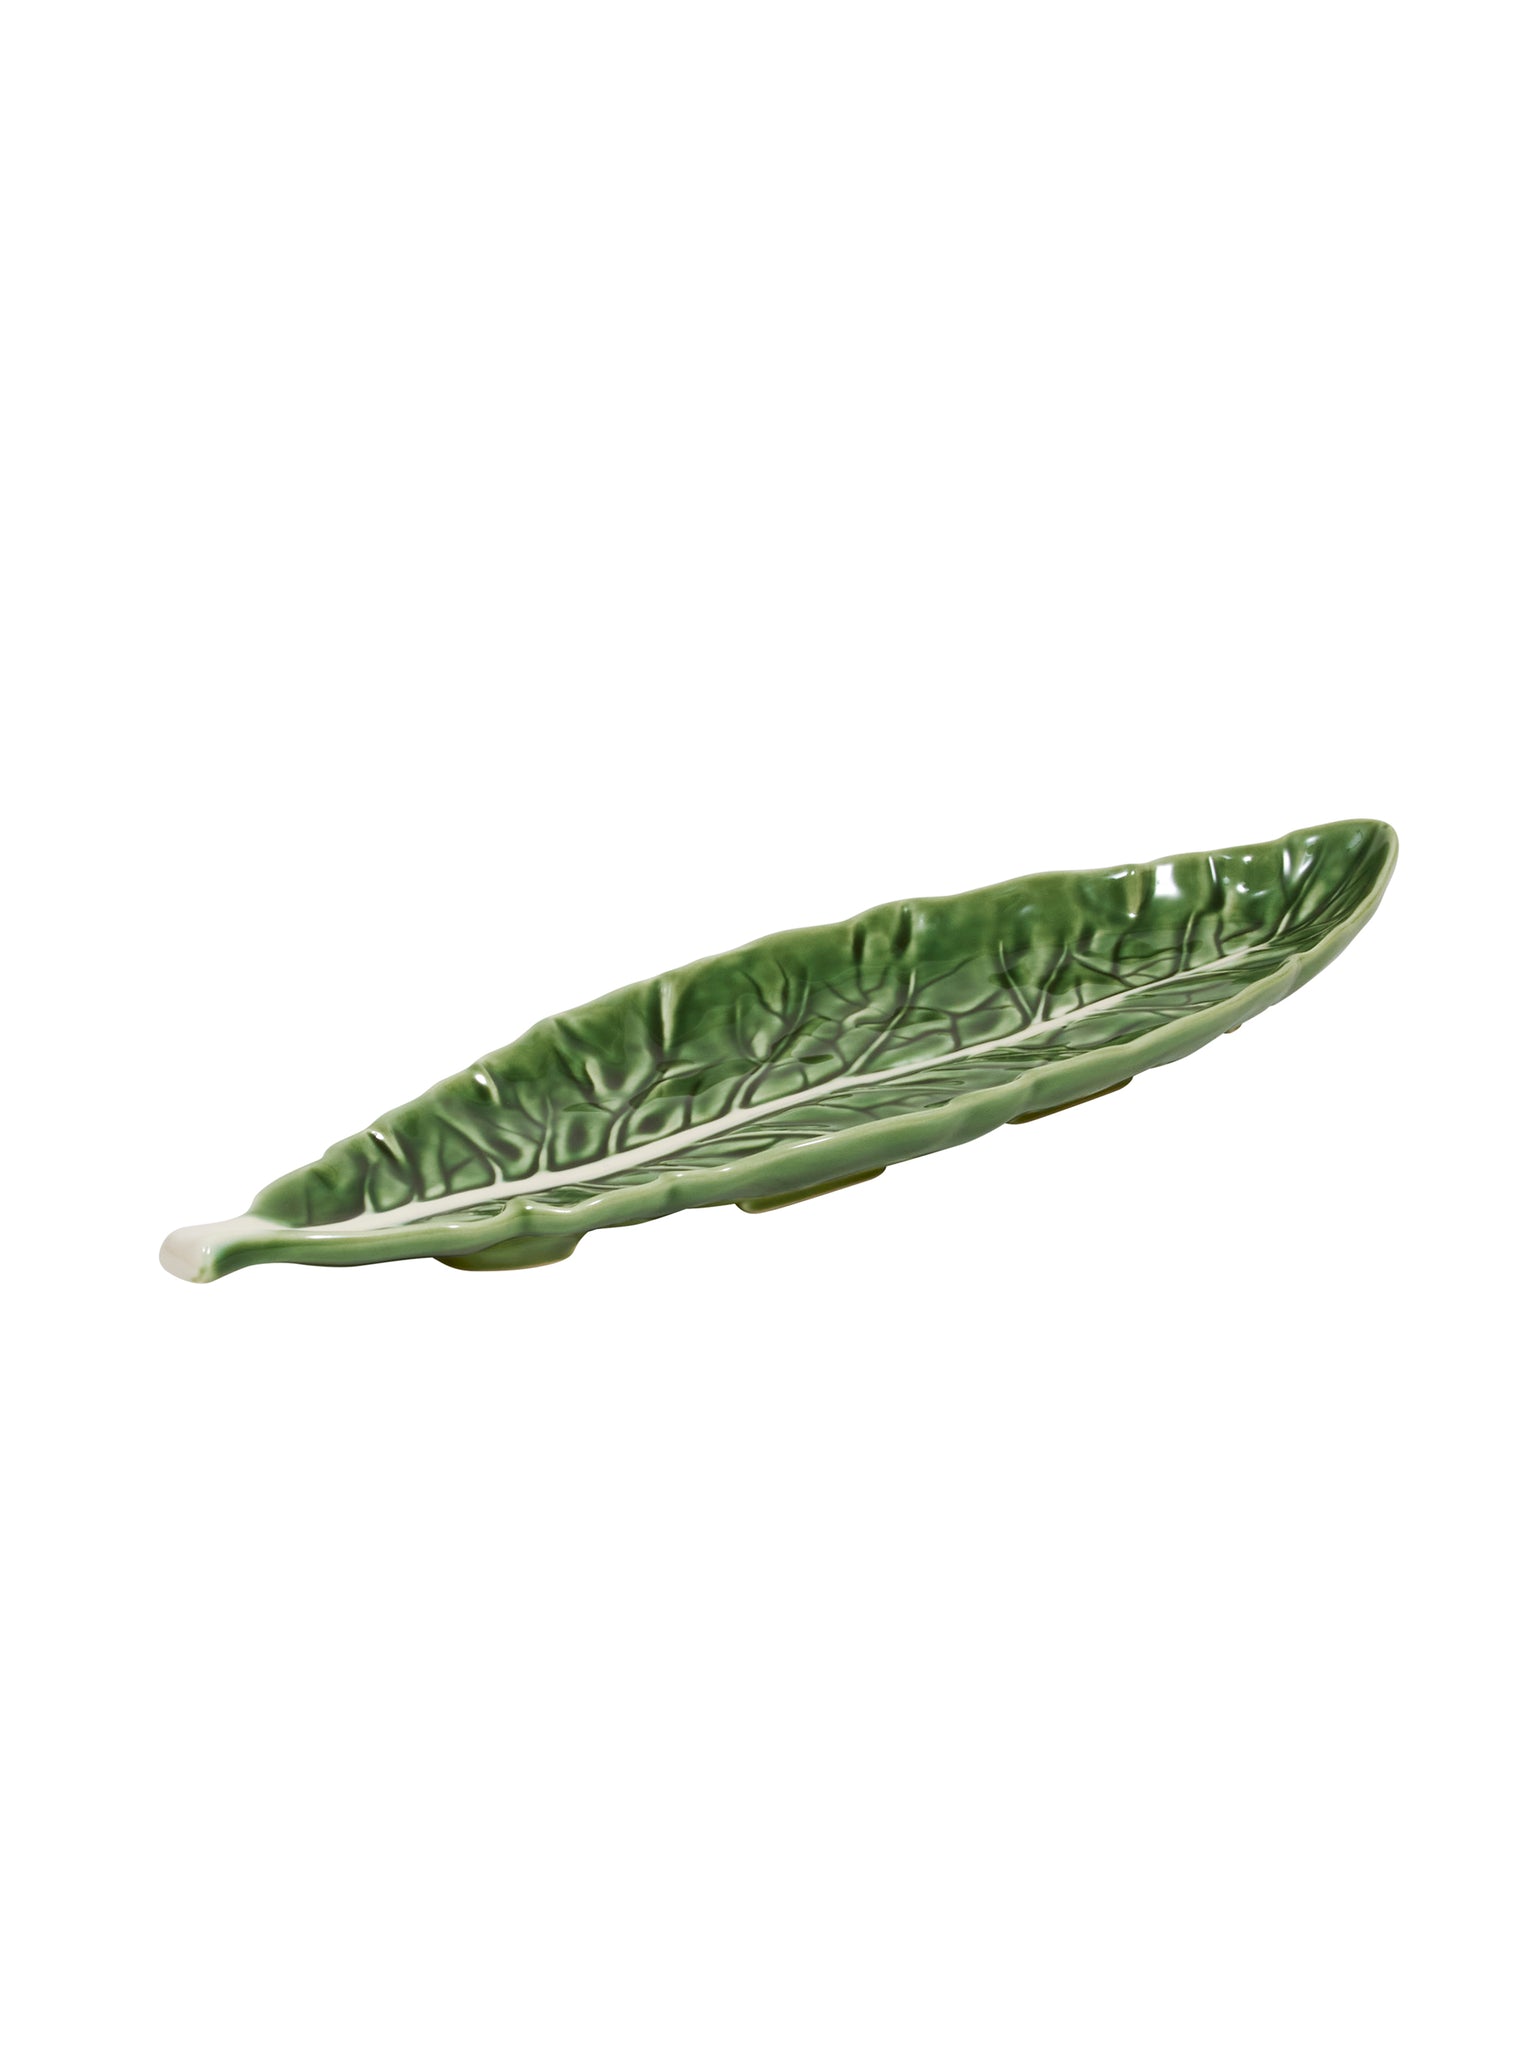 Bordallo Pinheiro Narrow Cabbage Leaf Weston Table